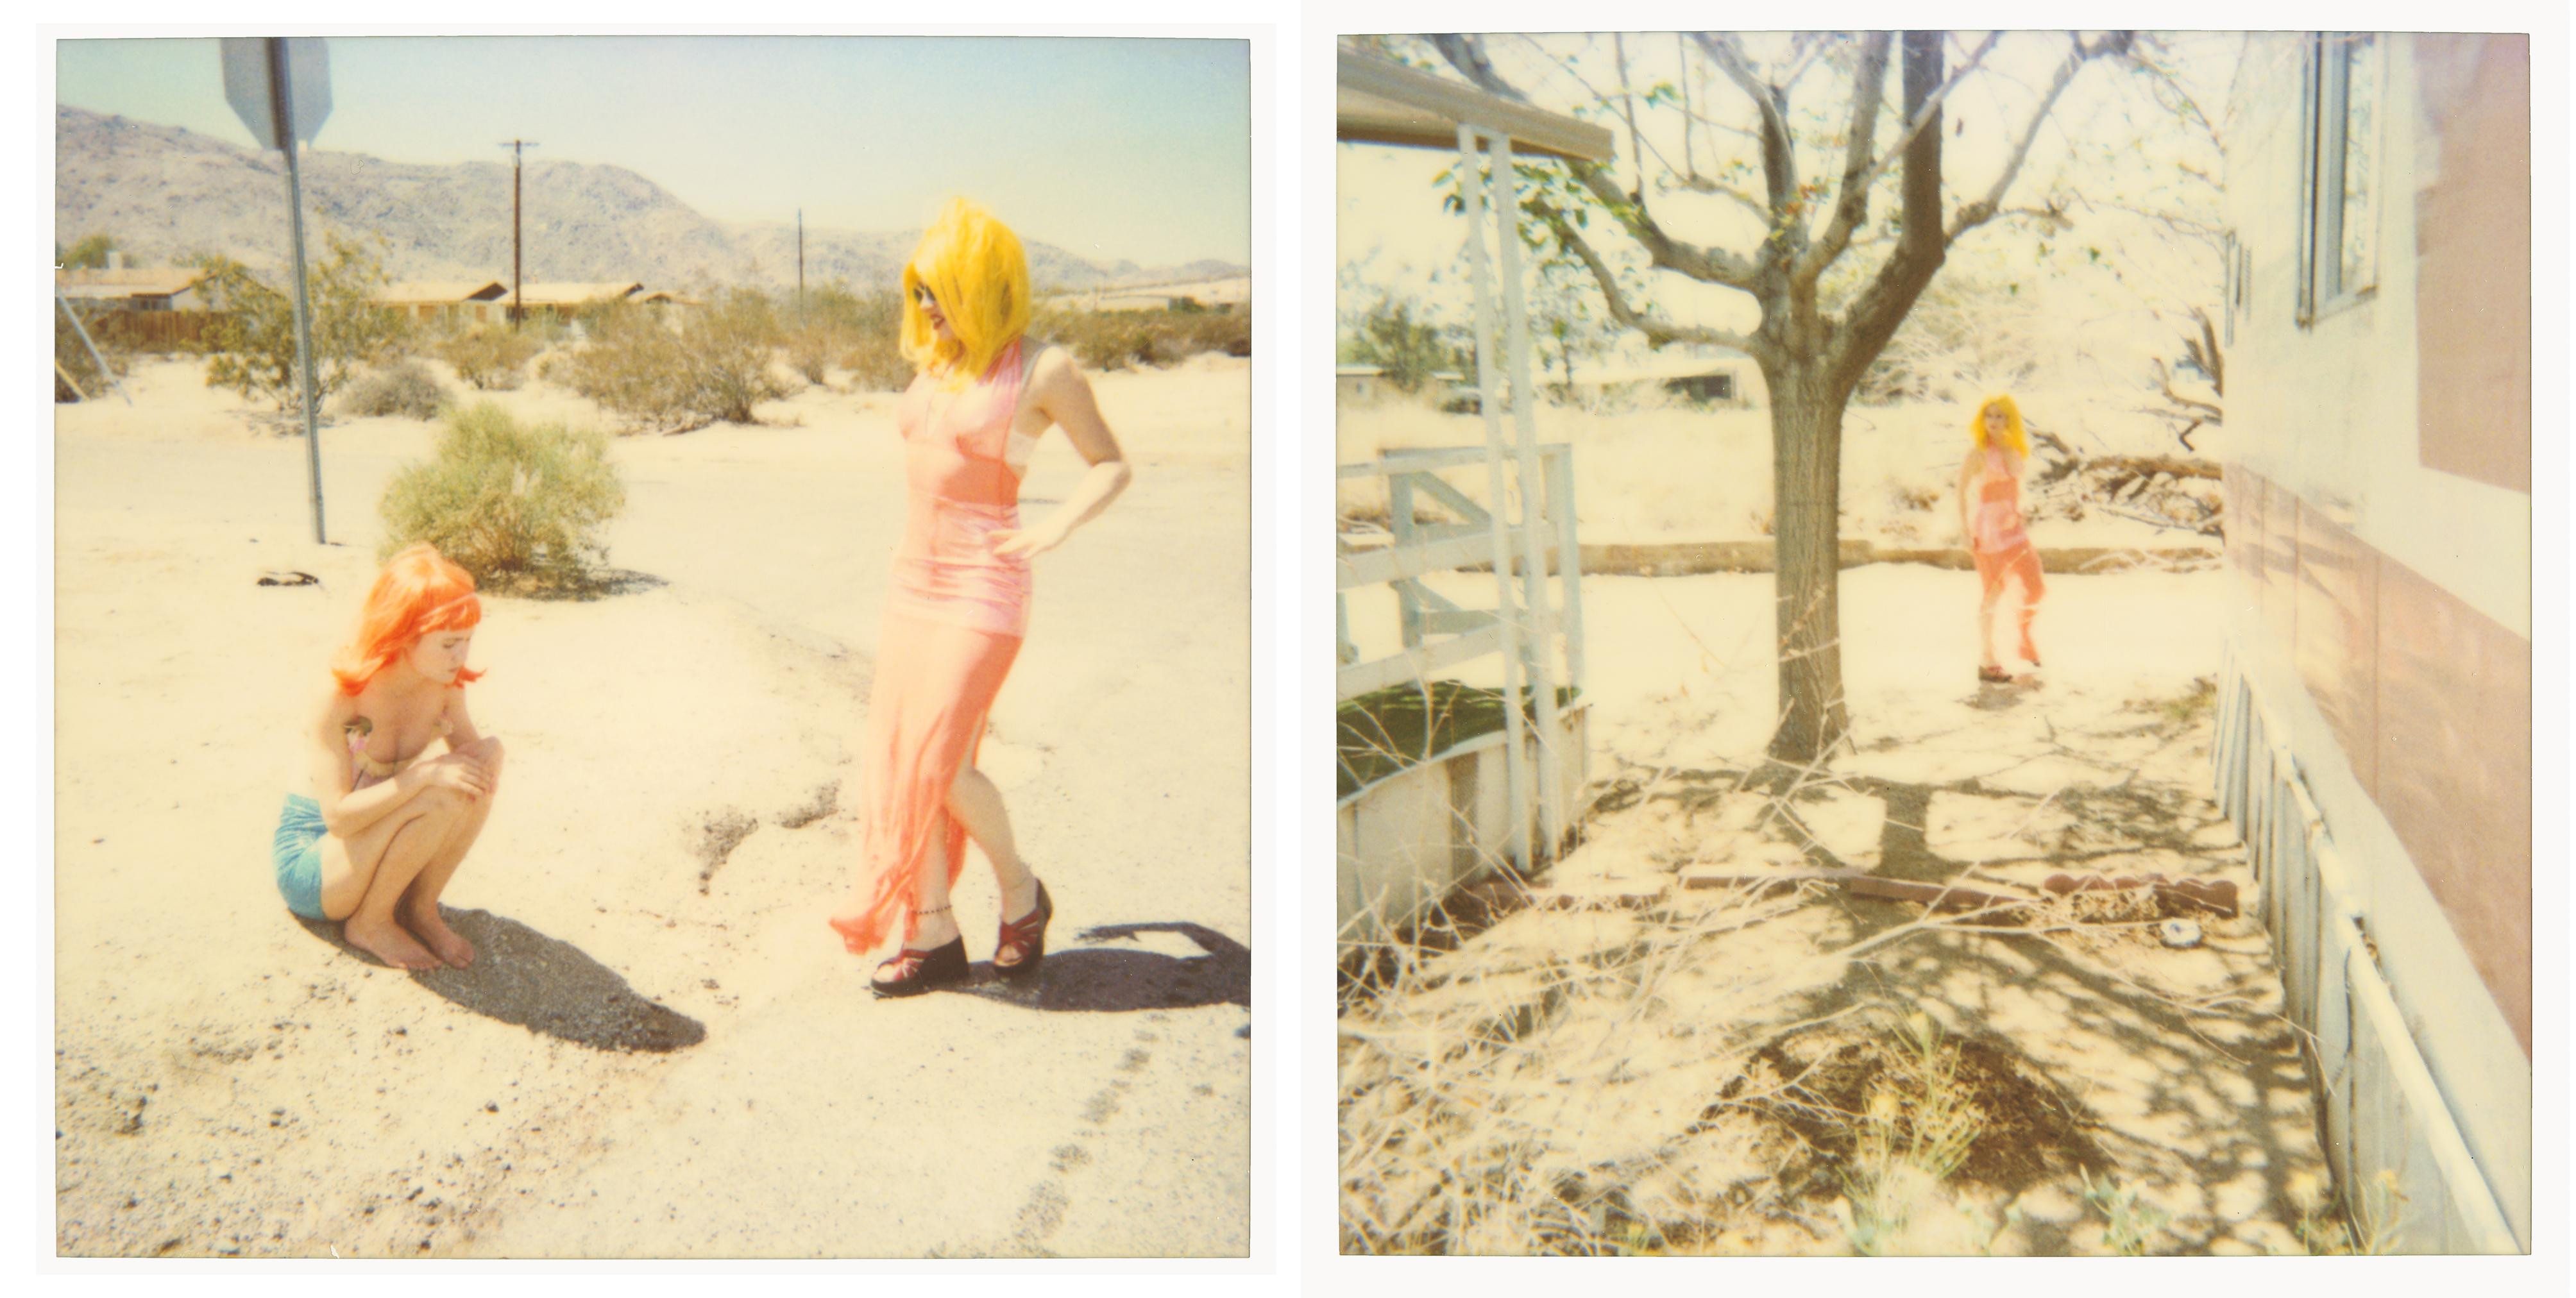 Stefanie Schneider Color Photograph – Radha und Max an Dirt Road (29 Palms, CA) – analog, Polaroid, zeitgenössisch